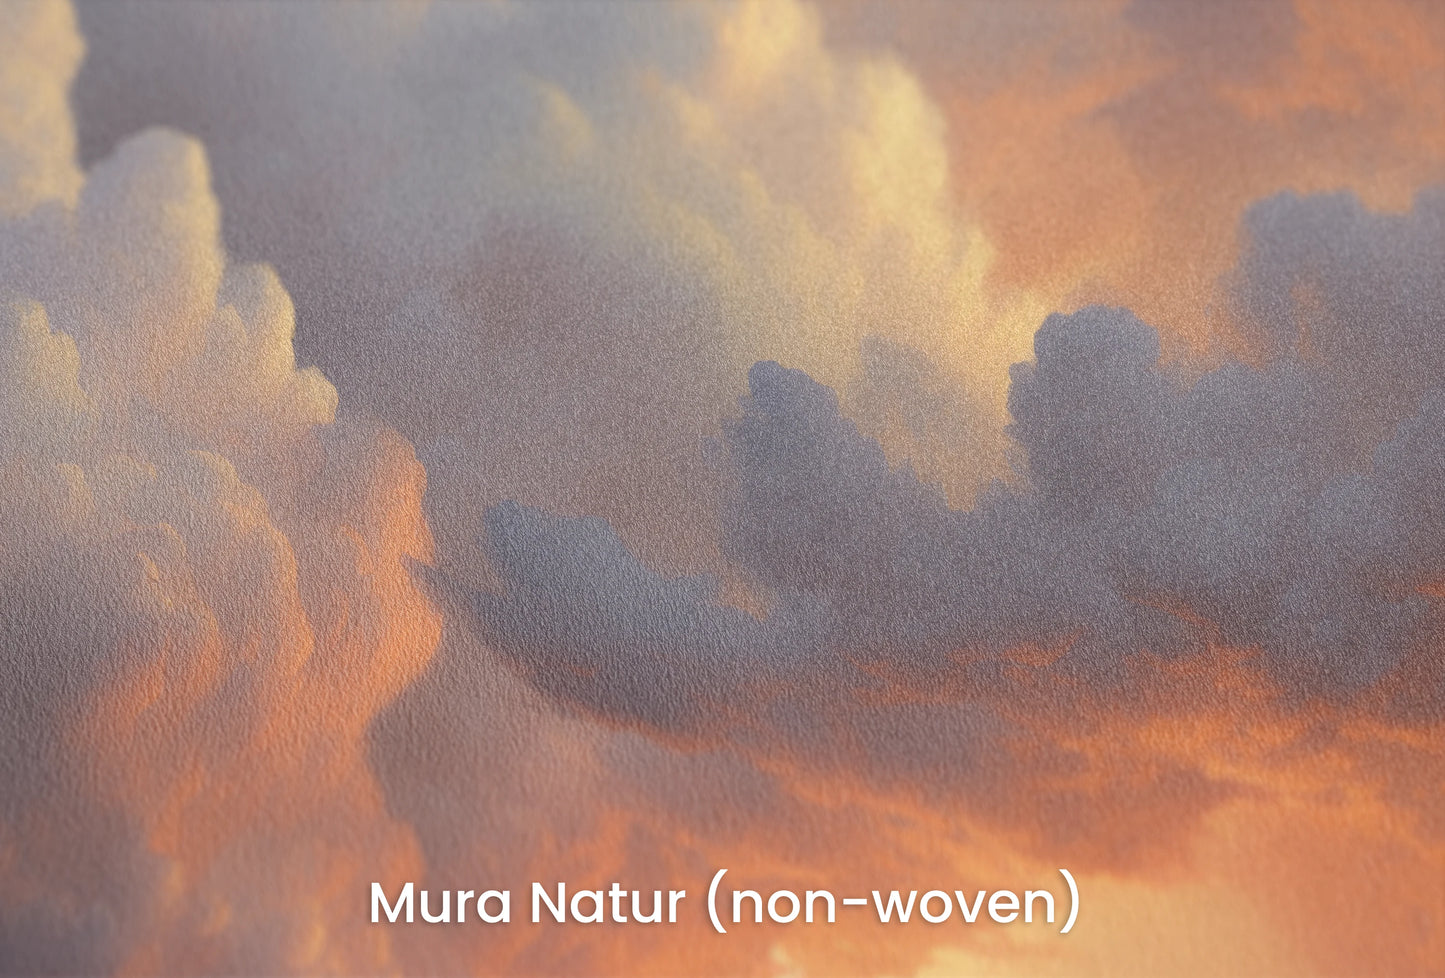 Zbliżenie na artystyczną fototapetę o nazwie Storm's Prelude na podłożu Mura Natur (non-woven) - naturalne i ekologiczne podłoże.